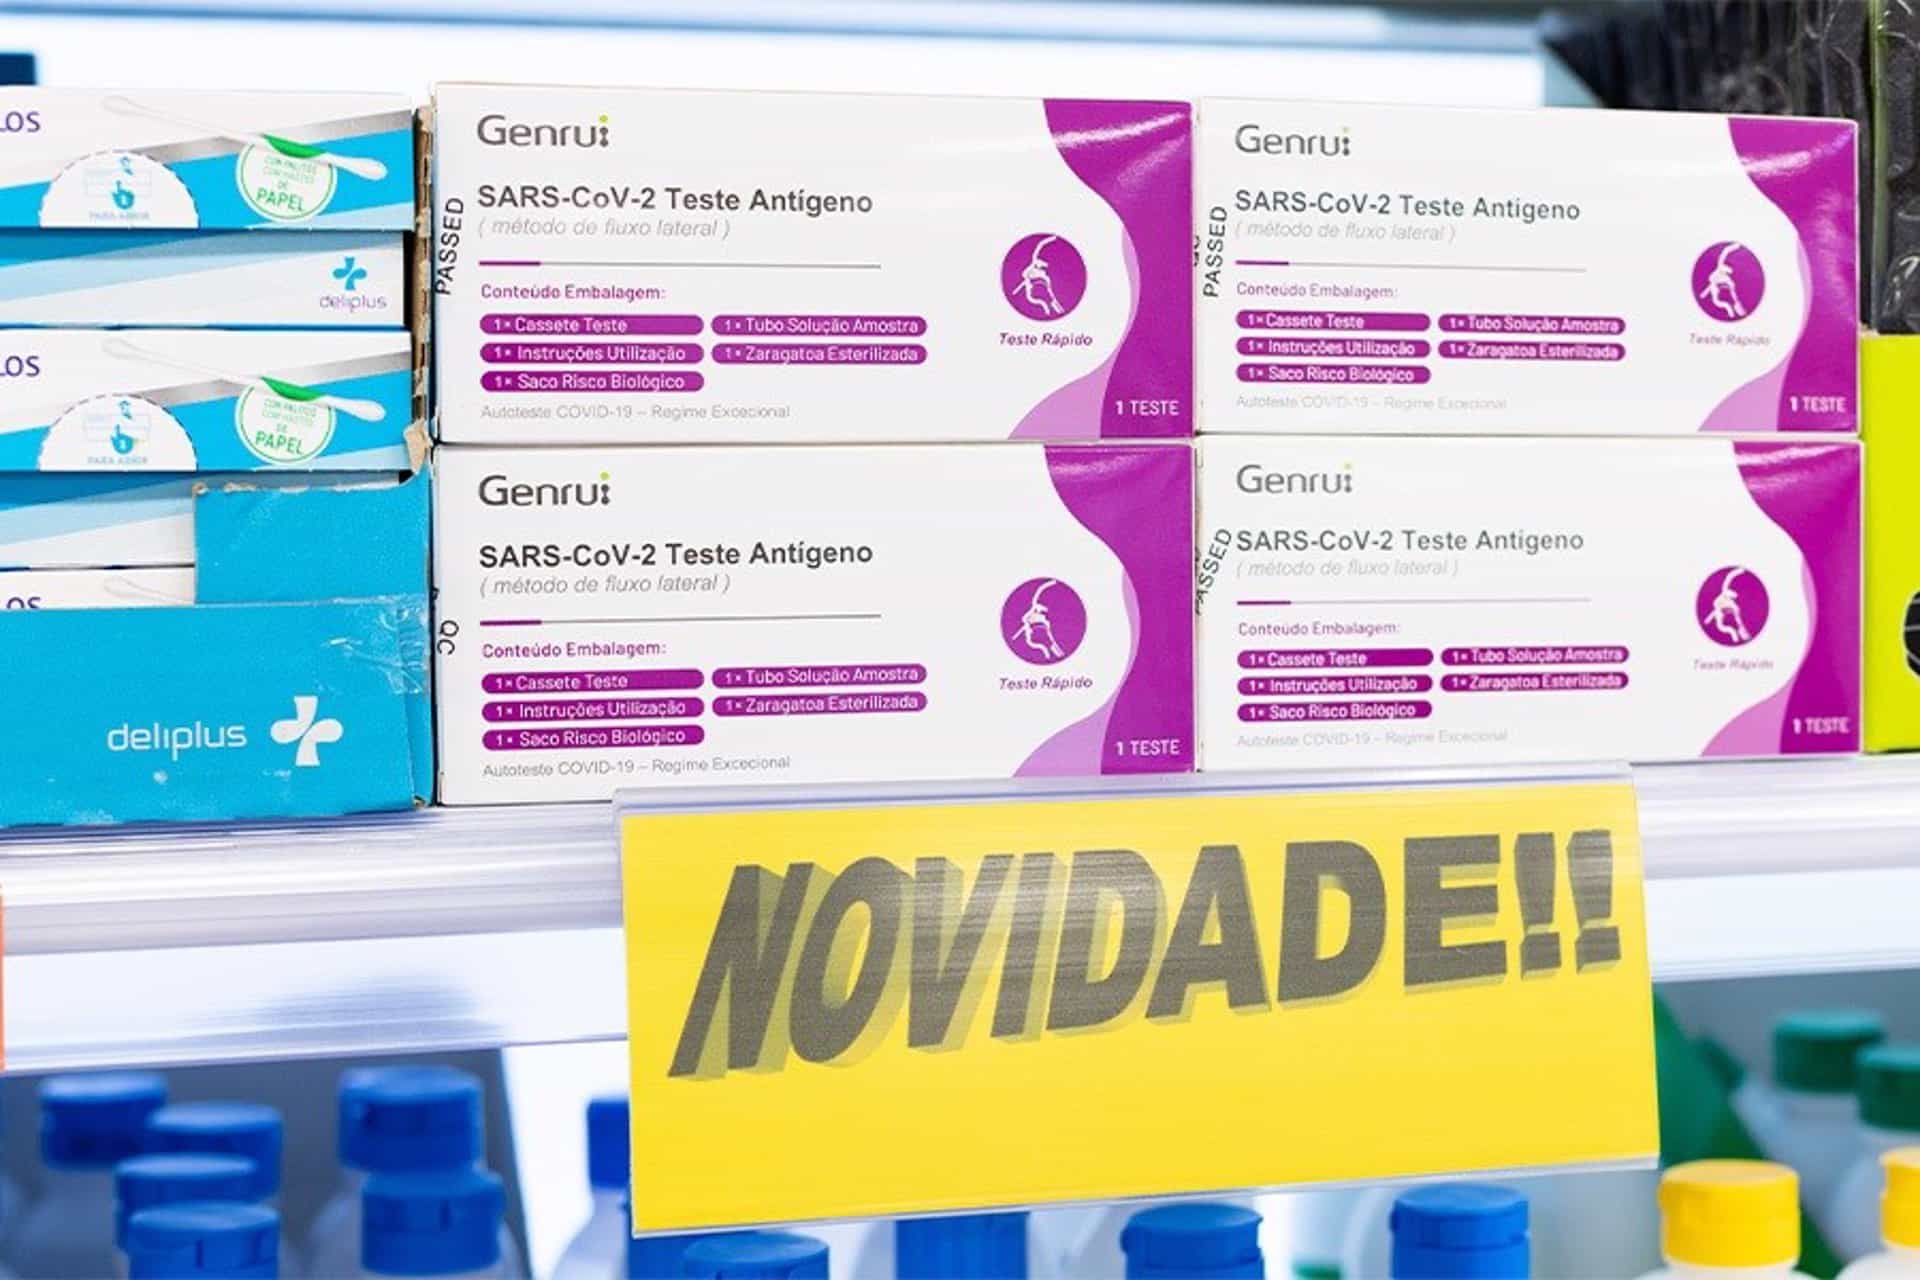 Test de antígenos de Mercadona en Portugal.